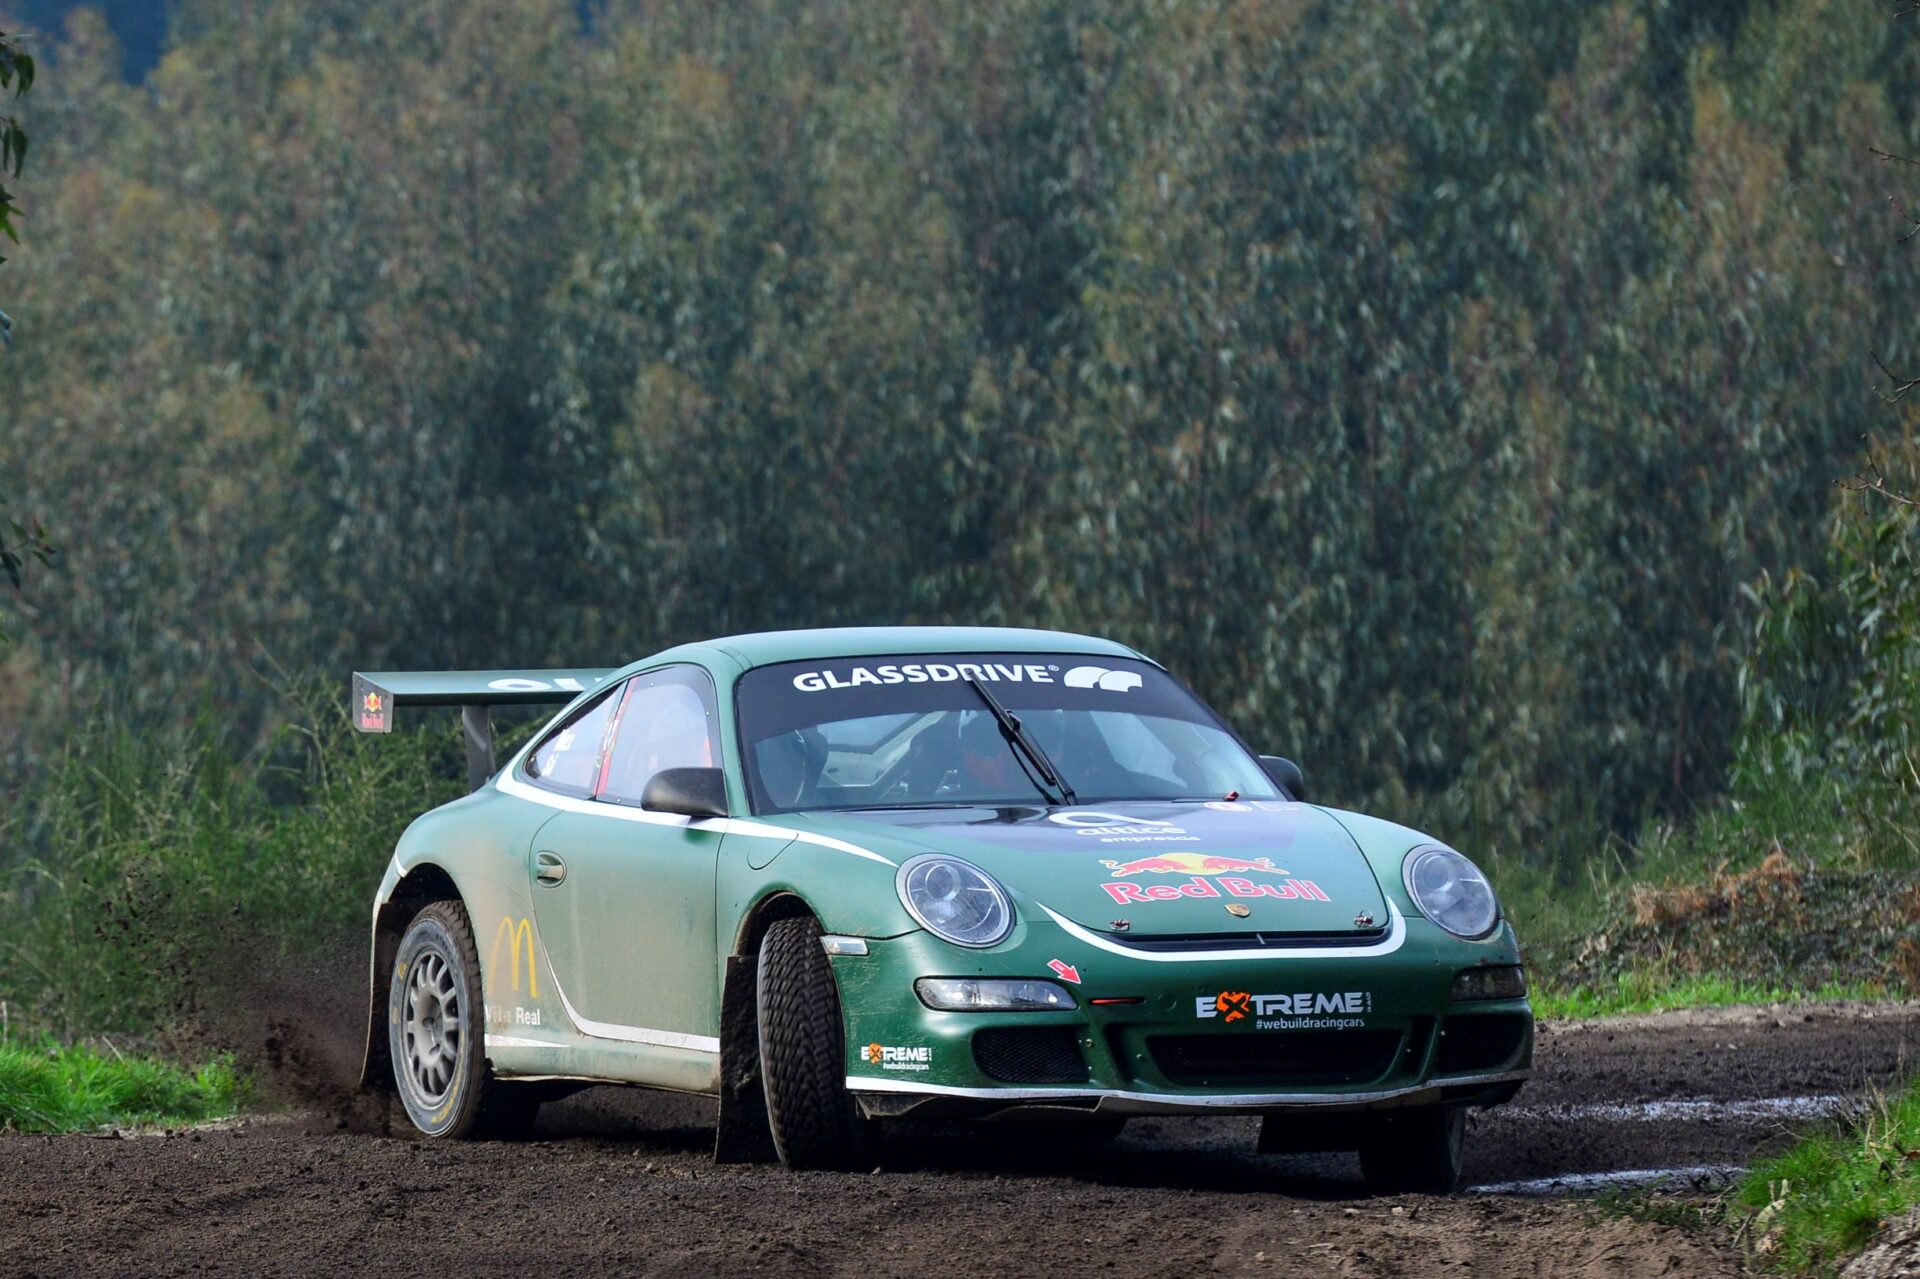 “Mex” Machado e a estreia do Porsche 911 GT3 na terra: “Estamos prontos para dar espetáculo!”